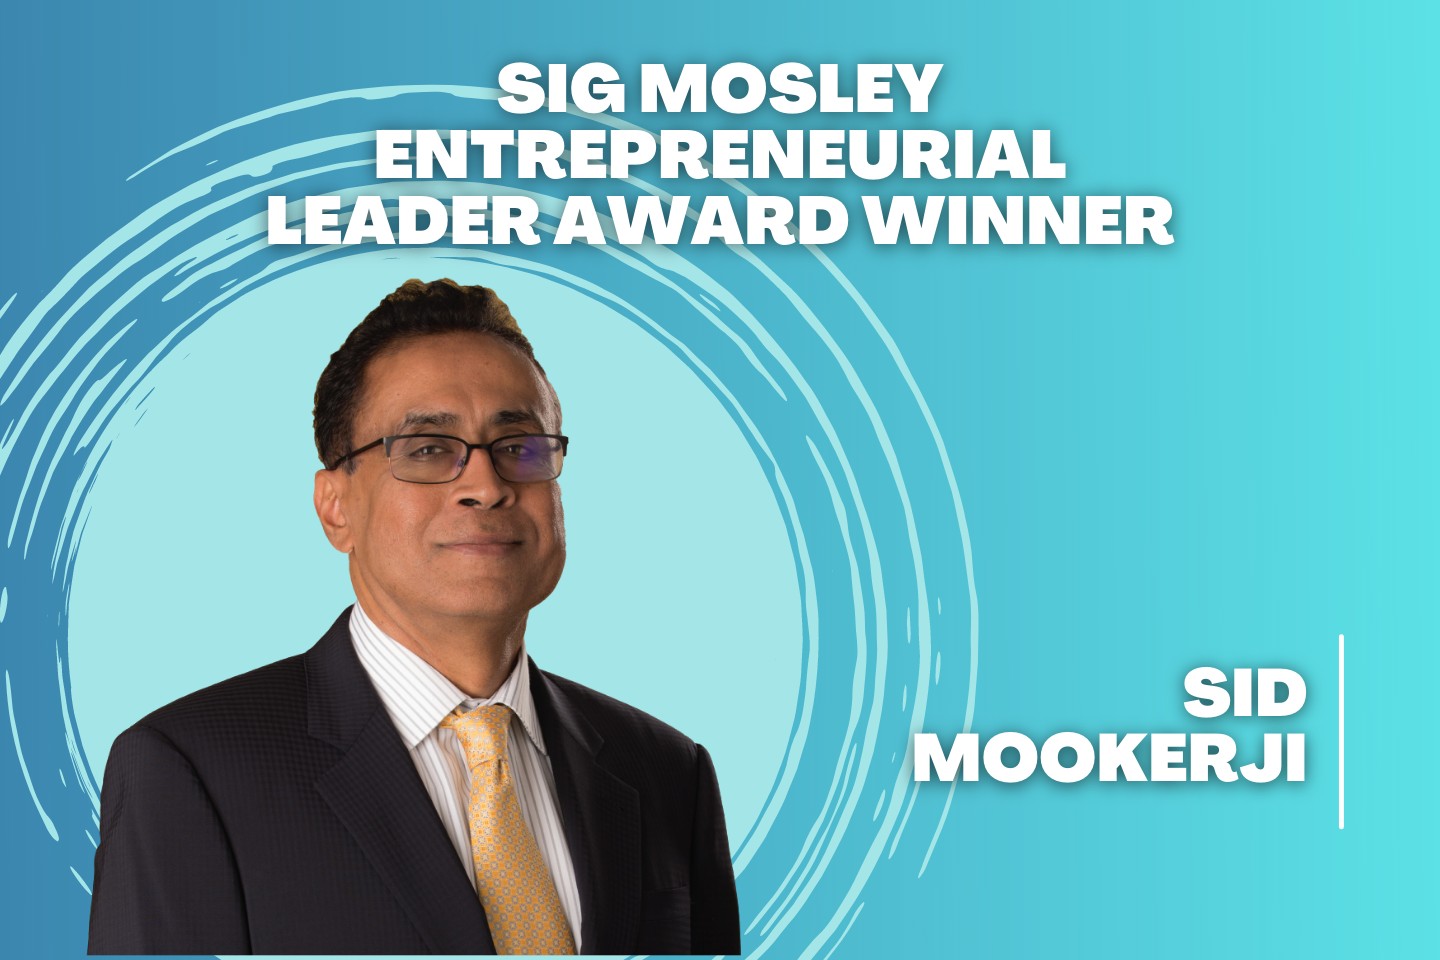 Sig Mosley Entrepreneurial Leader Award Winner - Sid Mookerji